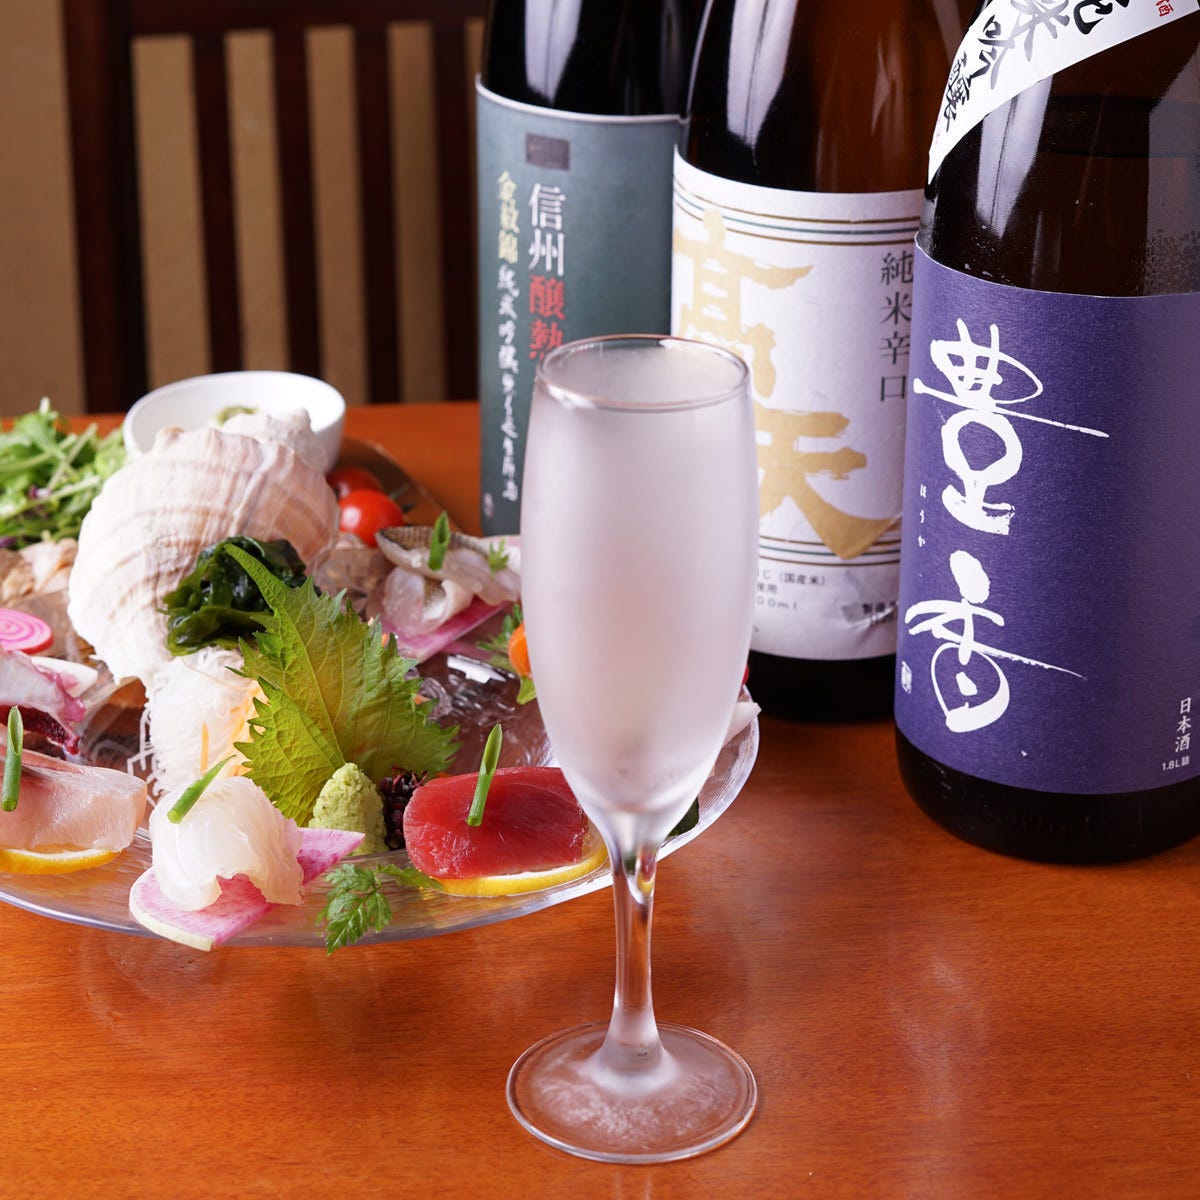 日本酒は全てシャンパングラスで
提供しています。